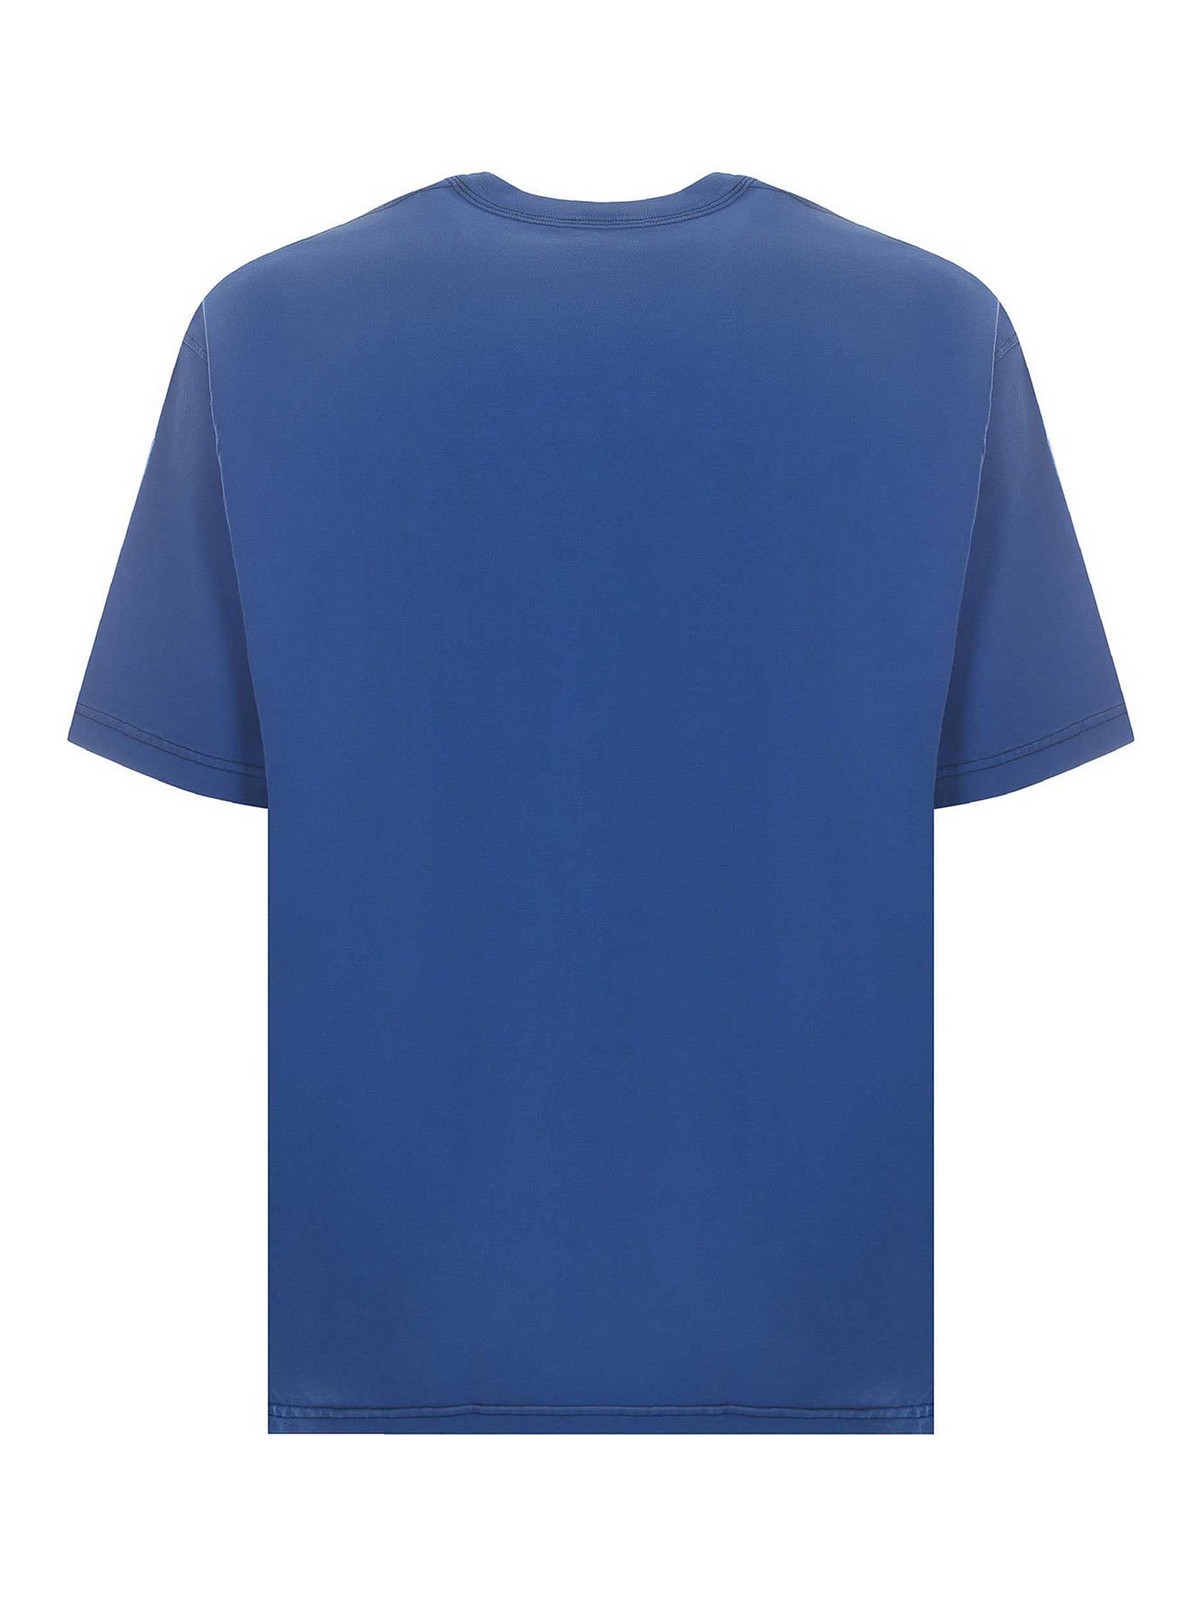 Shop Diesel Camiseta - Azul In Blue